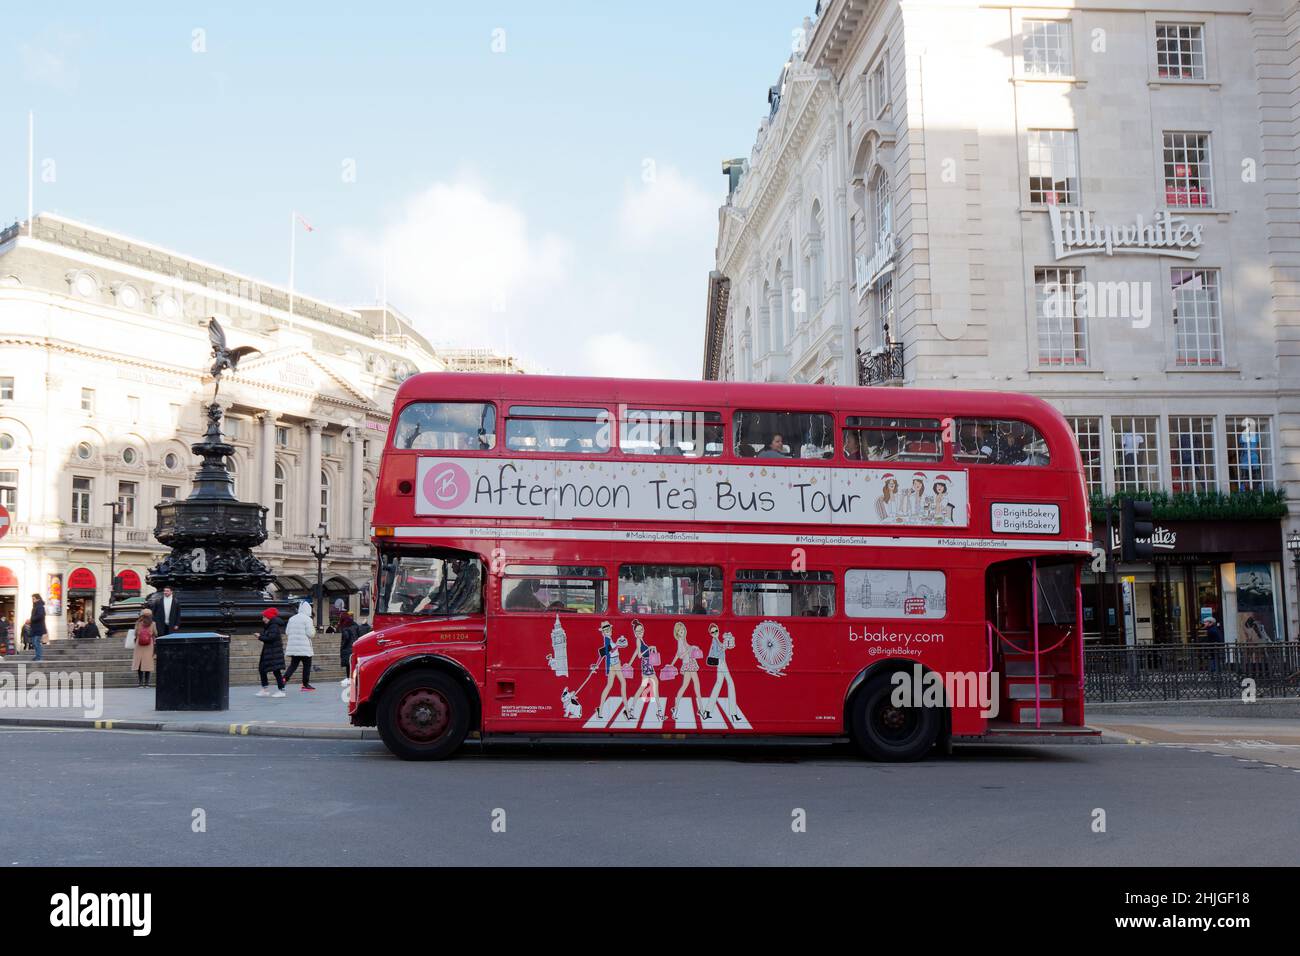 Londres, Grand Londres, Angleterre, janvier 5th 2022: L'après-midi thé rouge bus à impériale à travers Piccadilly Circus. Banque D'Images